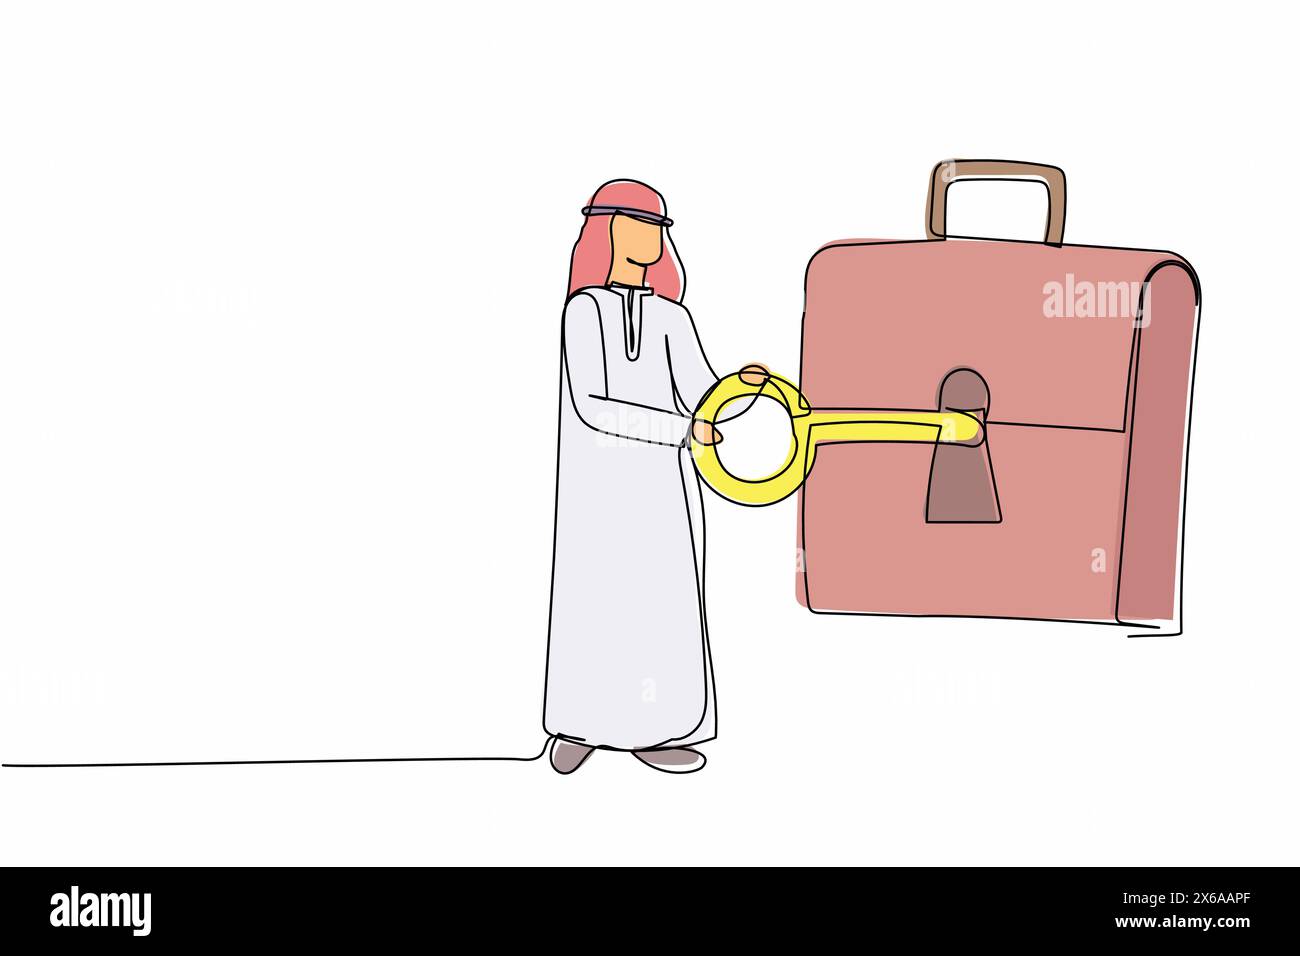 Durchgehende einzeilige Zeichnung arabischer Geschäftsmann, der Schlüssel in die Aktentasche steckt. Sicherheitstasche für geheimes Dokument. Investitionsportfolio, Börsenhandelsstr Stock Vektor